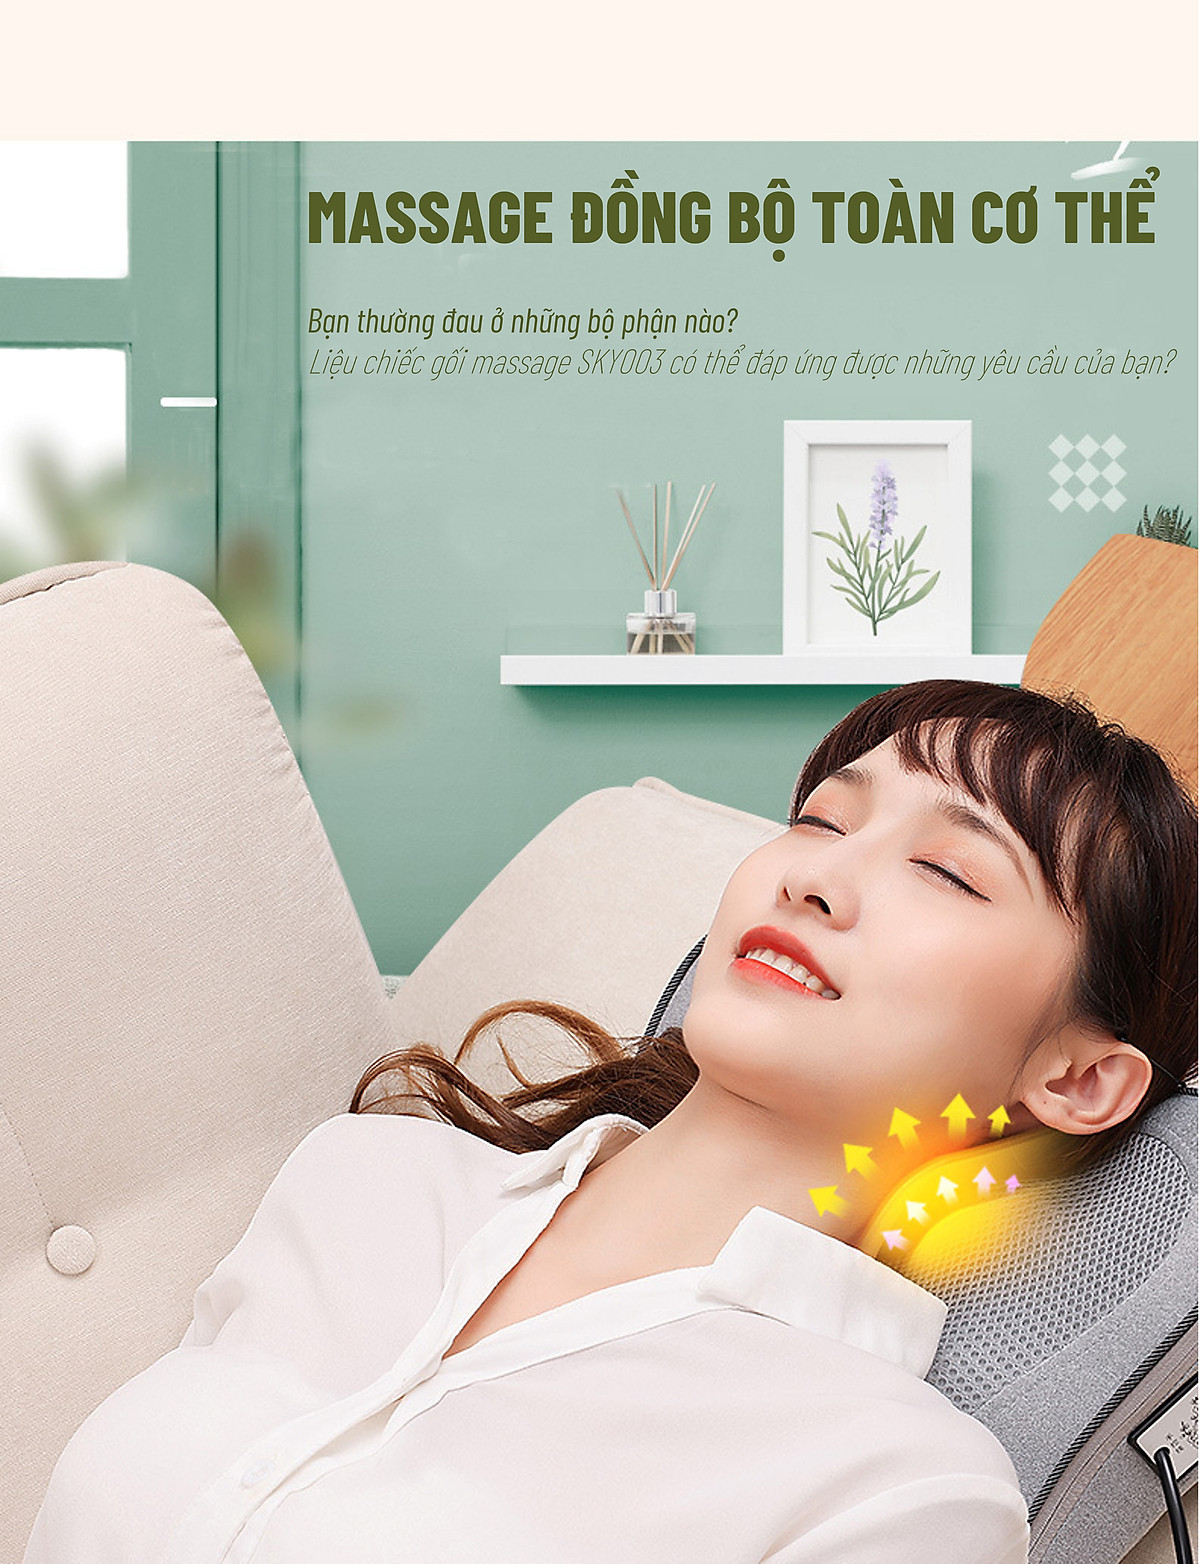 Gối Massage Đèn Led 7 Màu - Model 2022 - Thương Hiệu SKYPIEA - 20 Bi Giúp Mát Xa Cổ, Vai, Gáy, Cột Sống Lưng - Chất Liệu Vải Nỉ Cao Cấp - Đệm Massage Toàn Thân